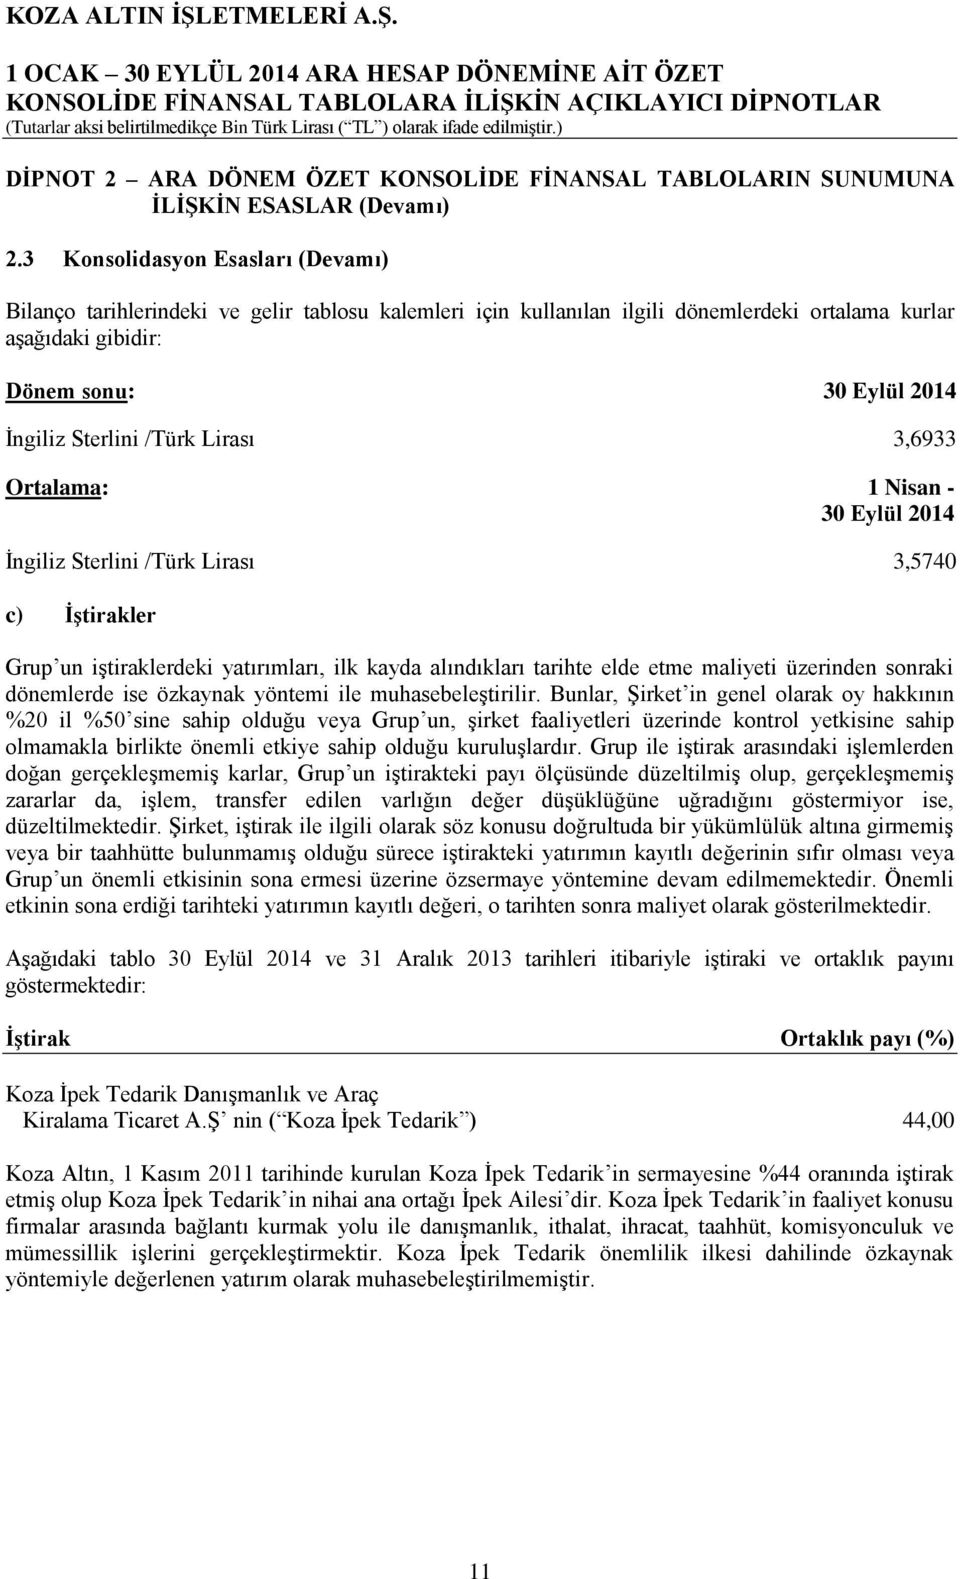 /Türk Lirası 3,6933 Ortalama: 1 Nisan - 30 Eylül 2014 İngiliz Sterlini /Türk Lirası 3,5740 c) İştirakler Grup un iştiraklerdeki yatırımları, ilk kayda alındıkları tarihte elde etme maliyeti üzerinden